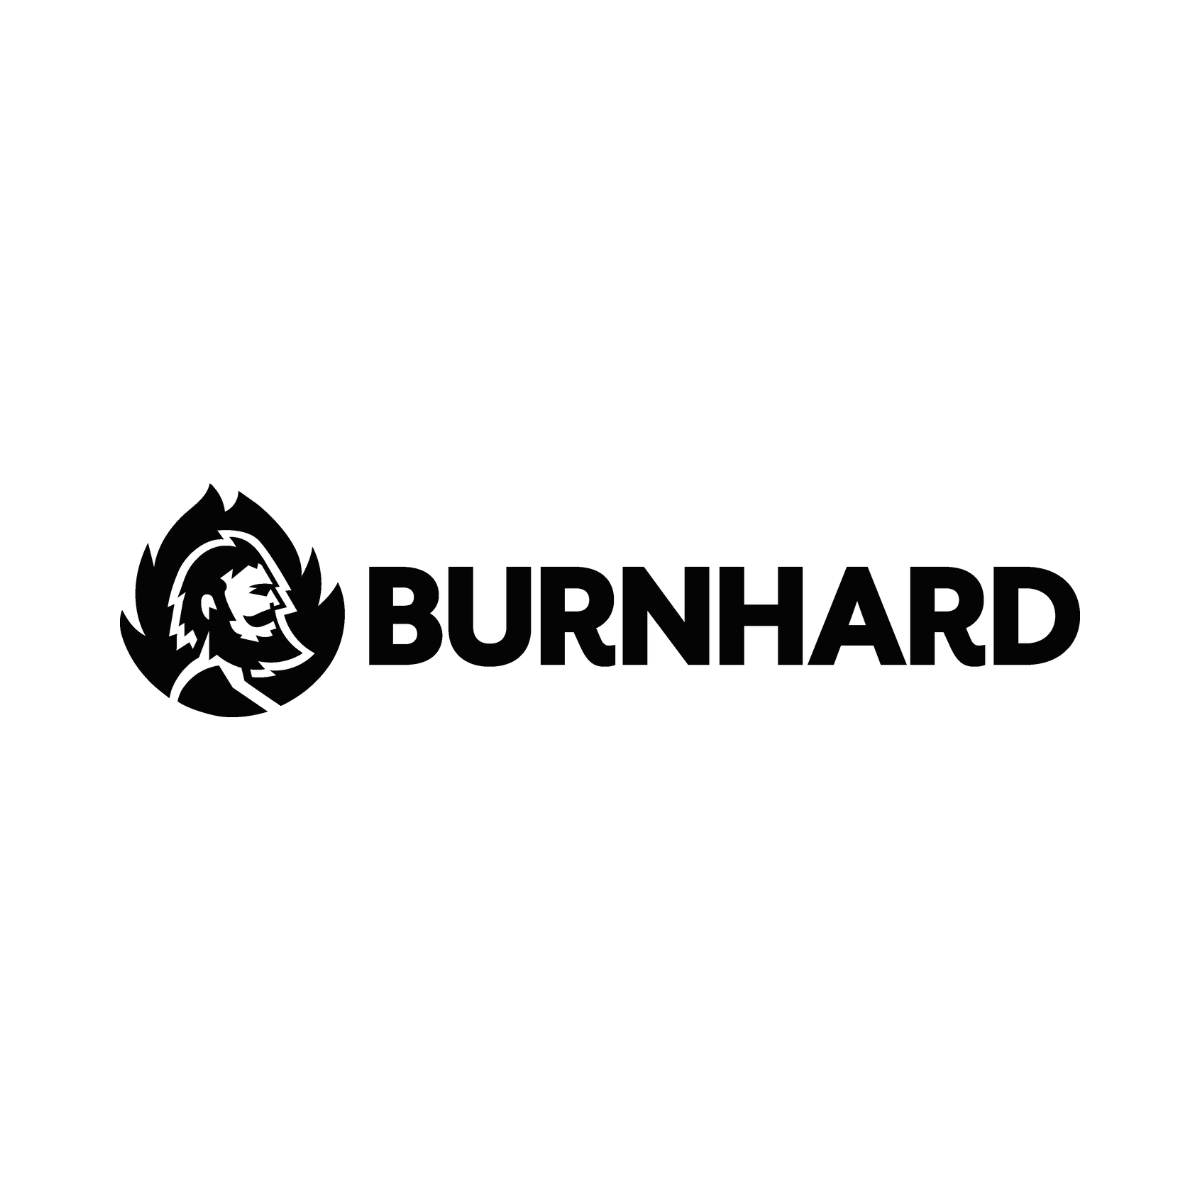 Burnhard-original-logo-1